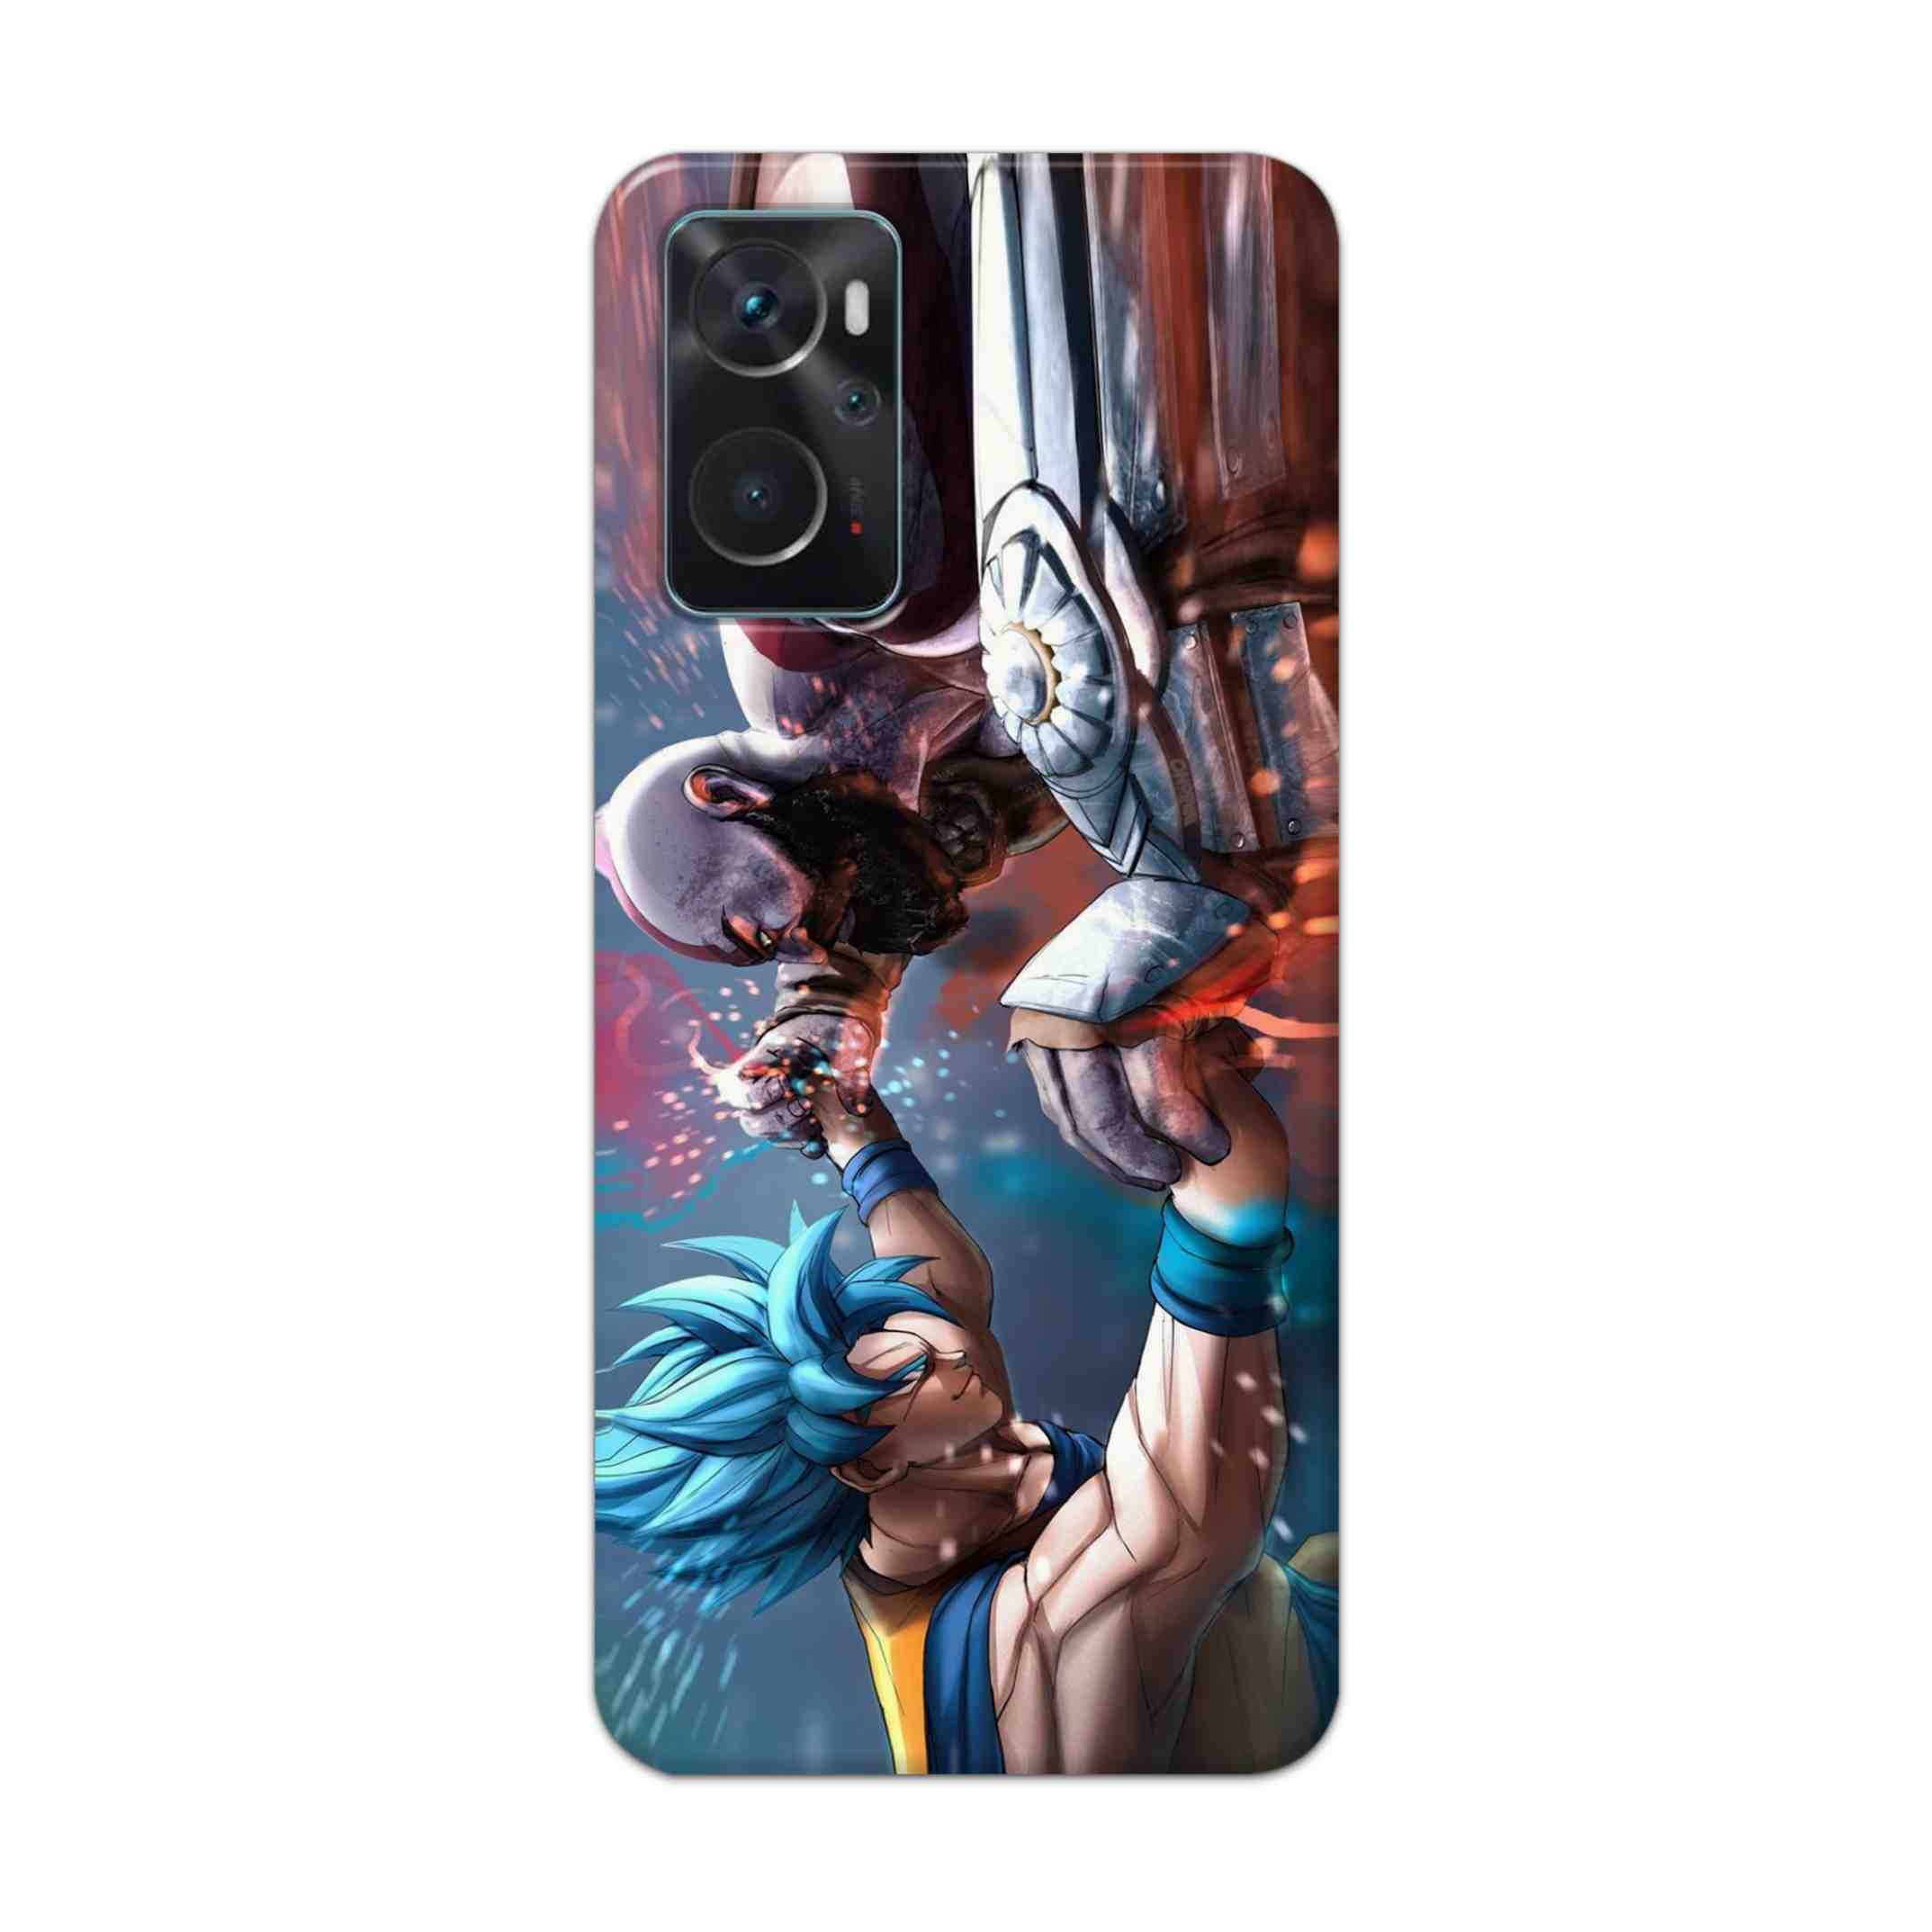 Buy Goku Vs Kratos Hard Back Mobile Phone Case Cover For Oppo K10 Online